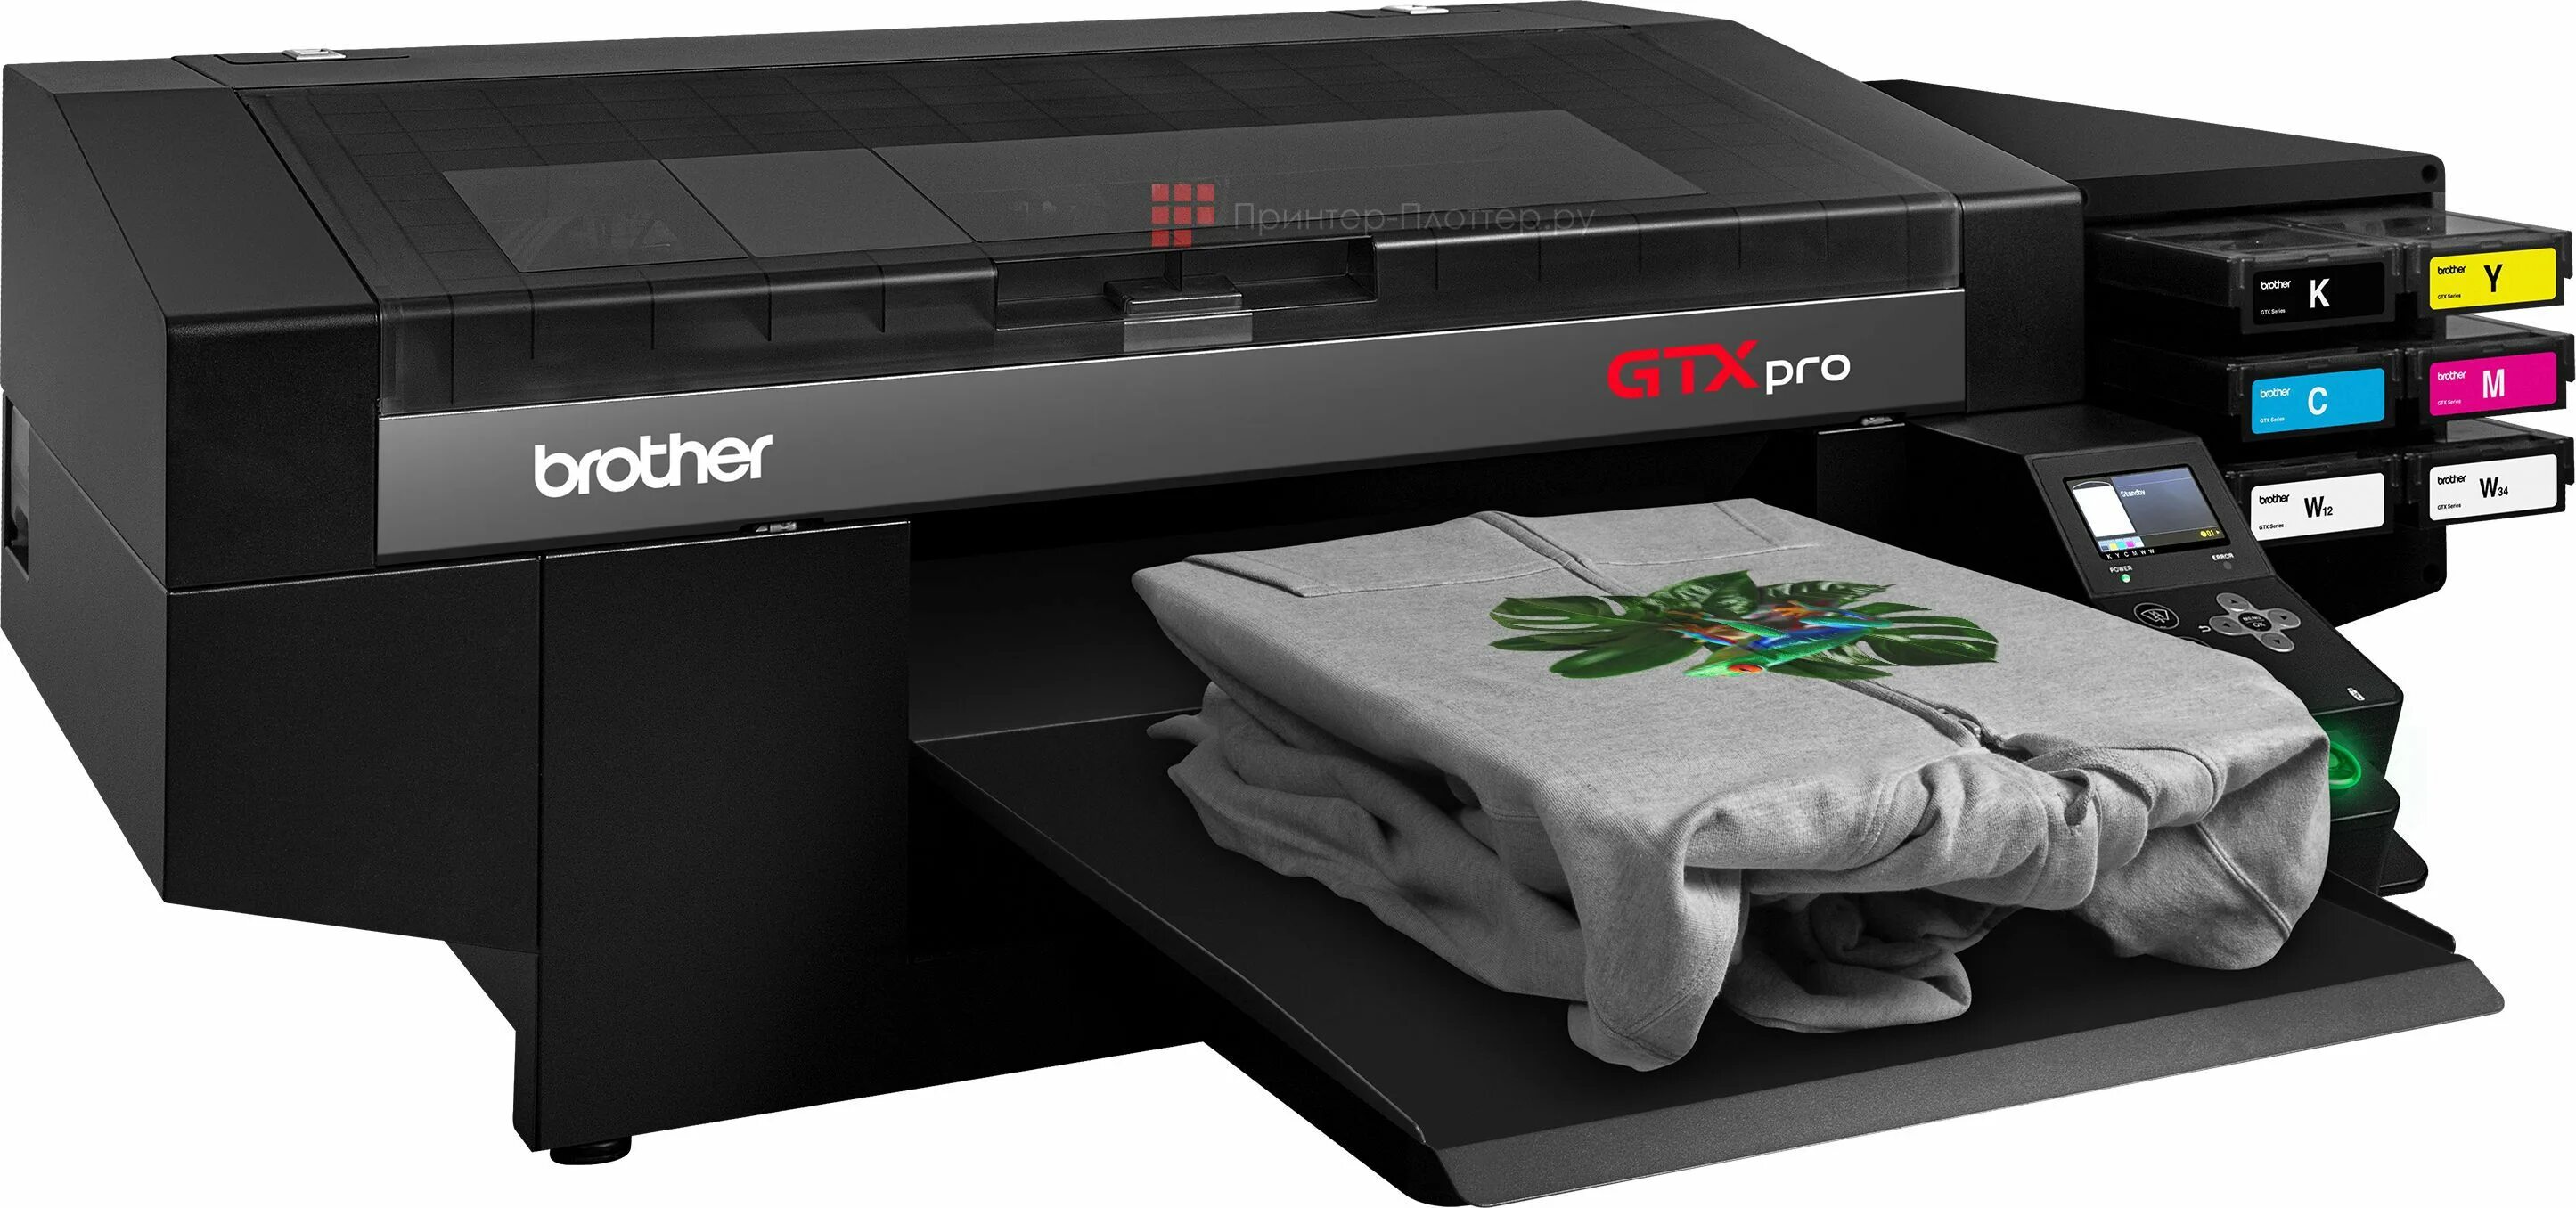 Купить принтер для футболок. Brother GTX 423 Pro. Текстильный принтер Бразер GTX. Текстильный принтер DTG Pro. Brother GTX-423 (GTX Pro).